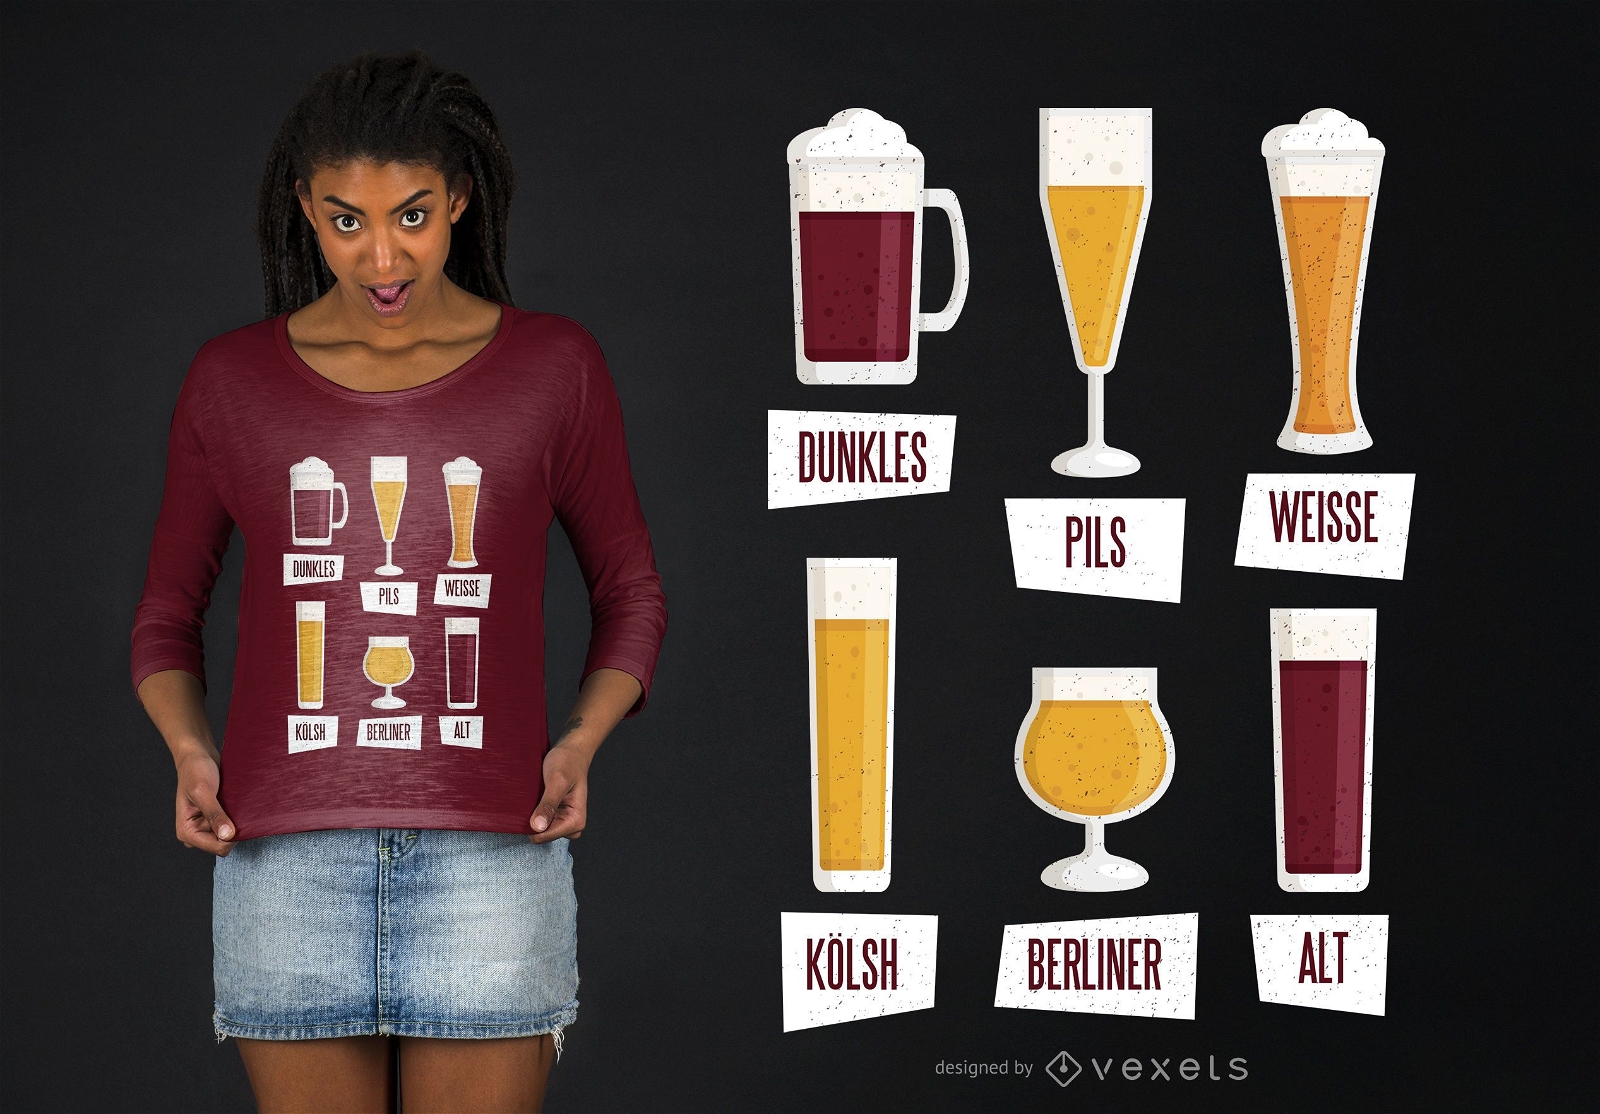 Dise?o de camiseta de tipos de cerveza.